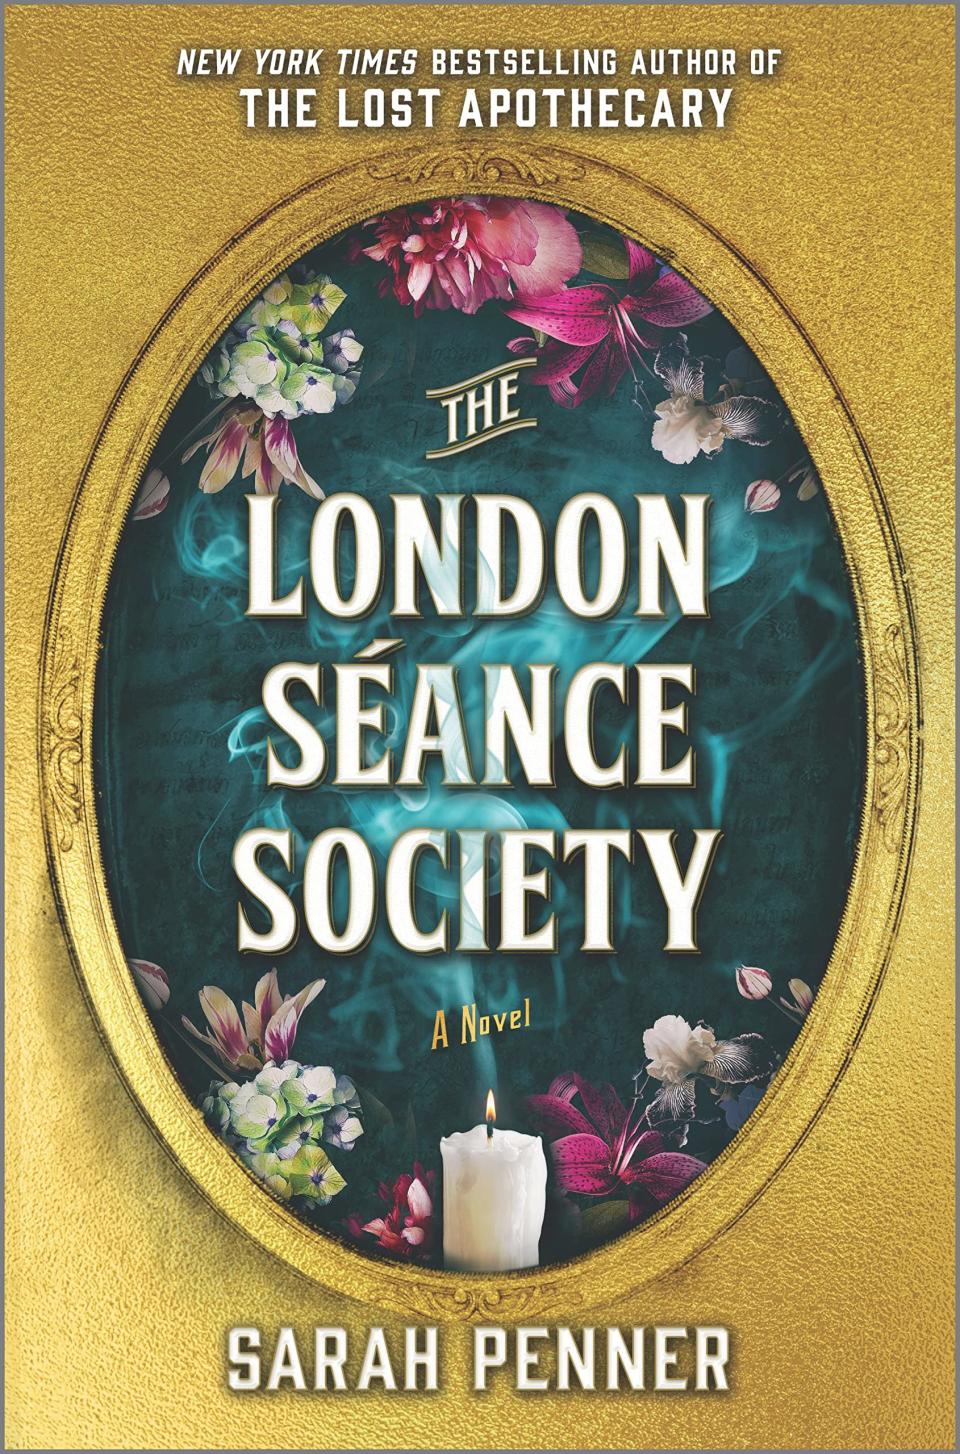 "The London Séance Society," by Sarah Penner